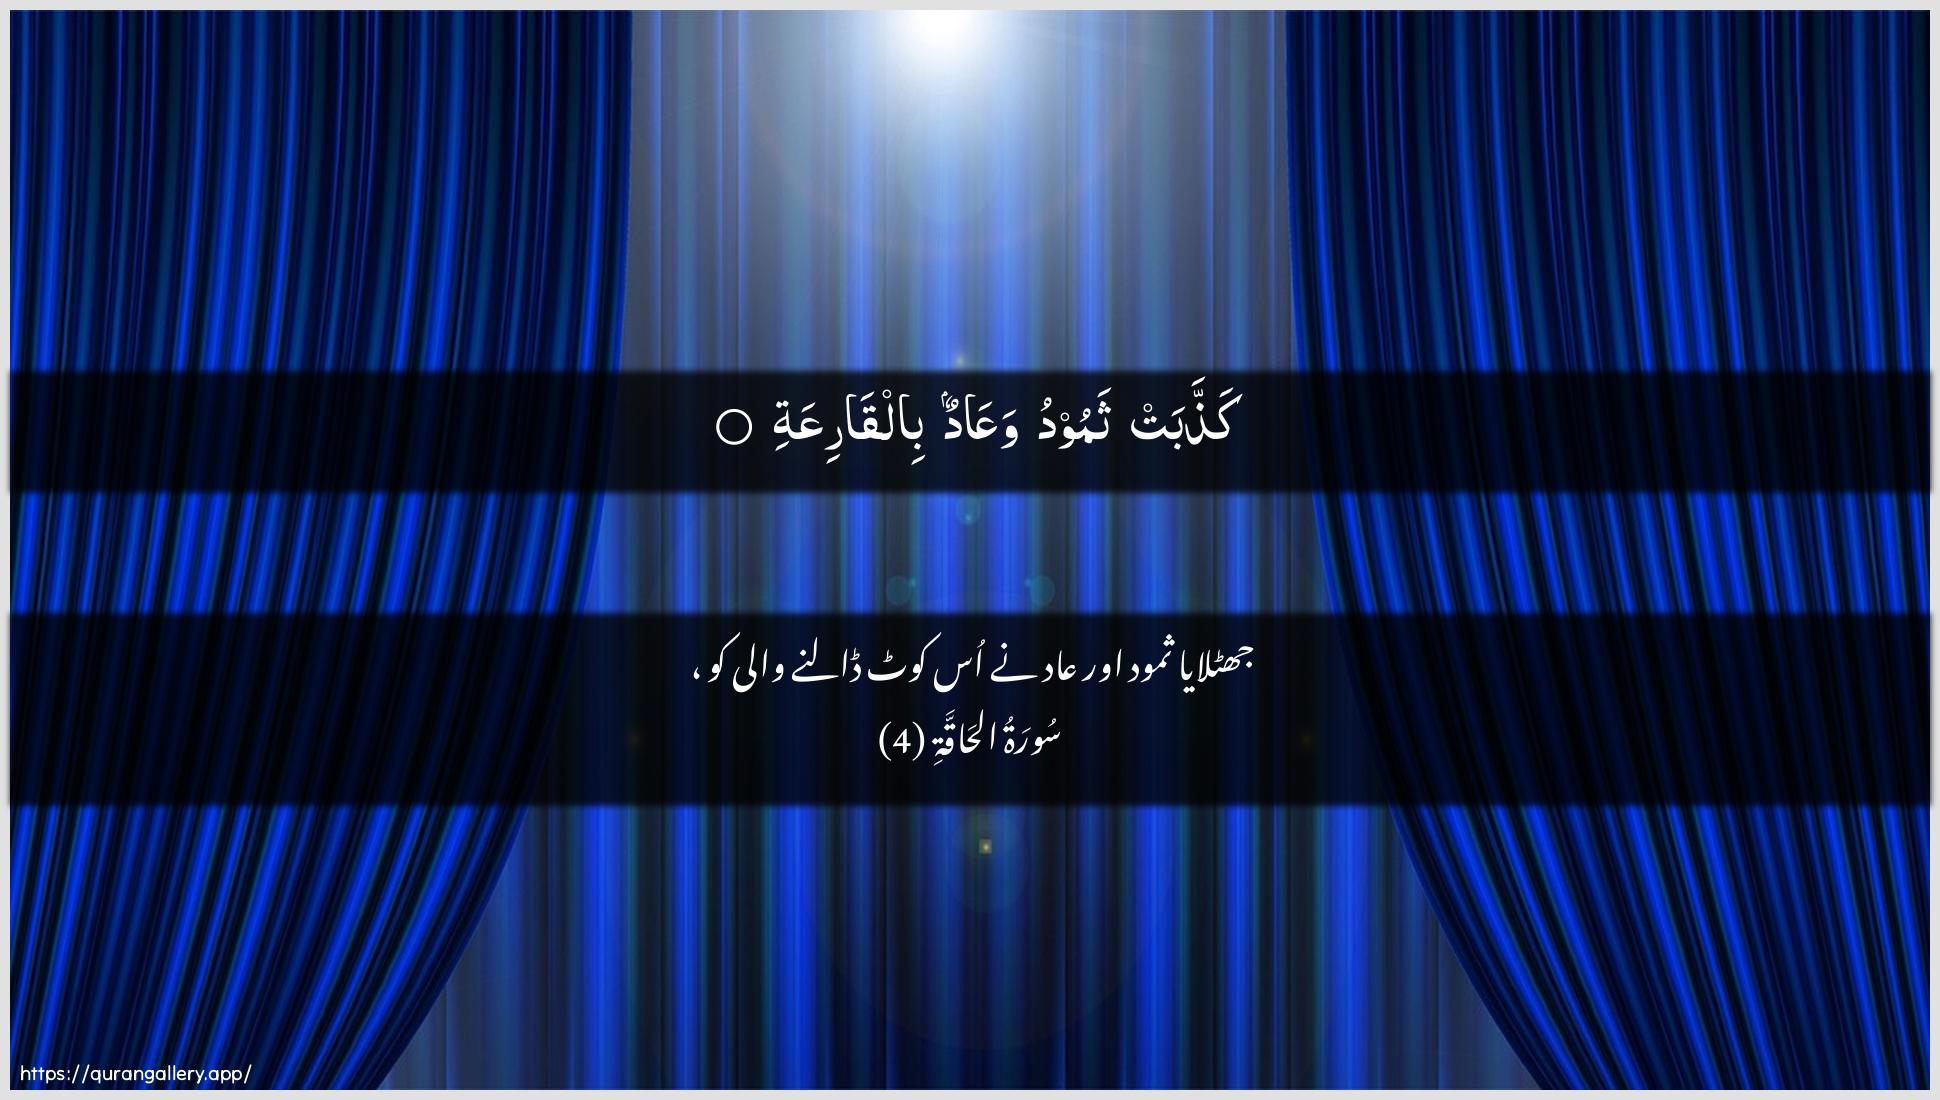 Surah Al-Haaqqa Ayah 4 of 69 HD Wallpaper: Download Beautiful horizontal Quran Verse Image | Kaththabat thamoodu waAAadun bilqariAAa